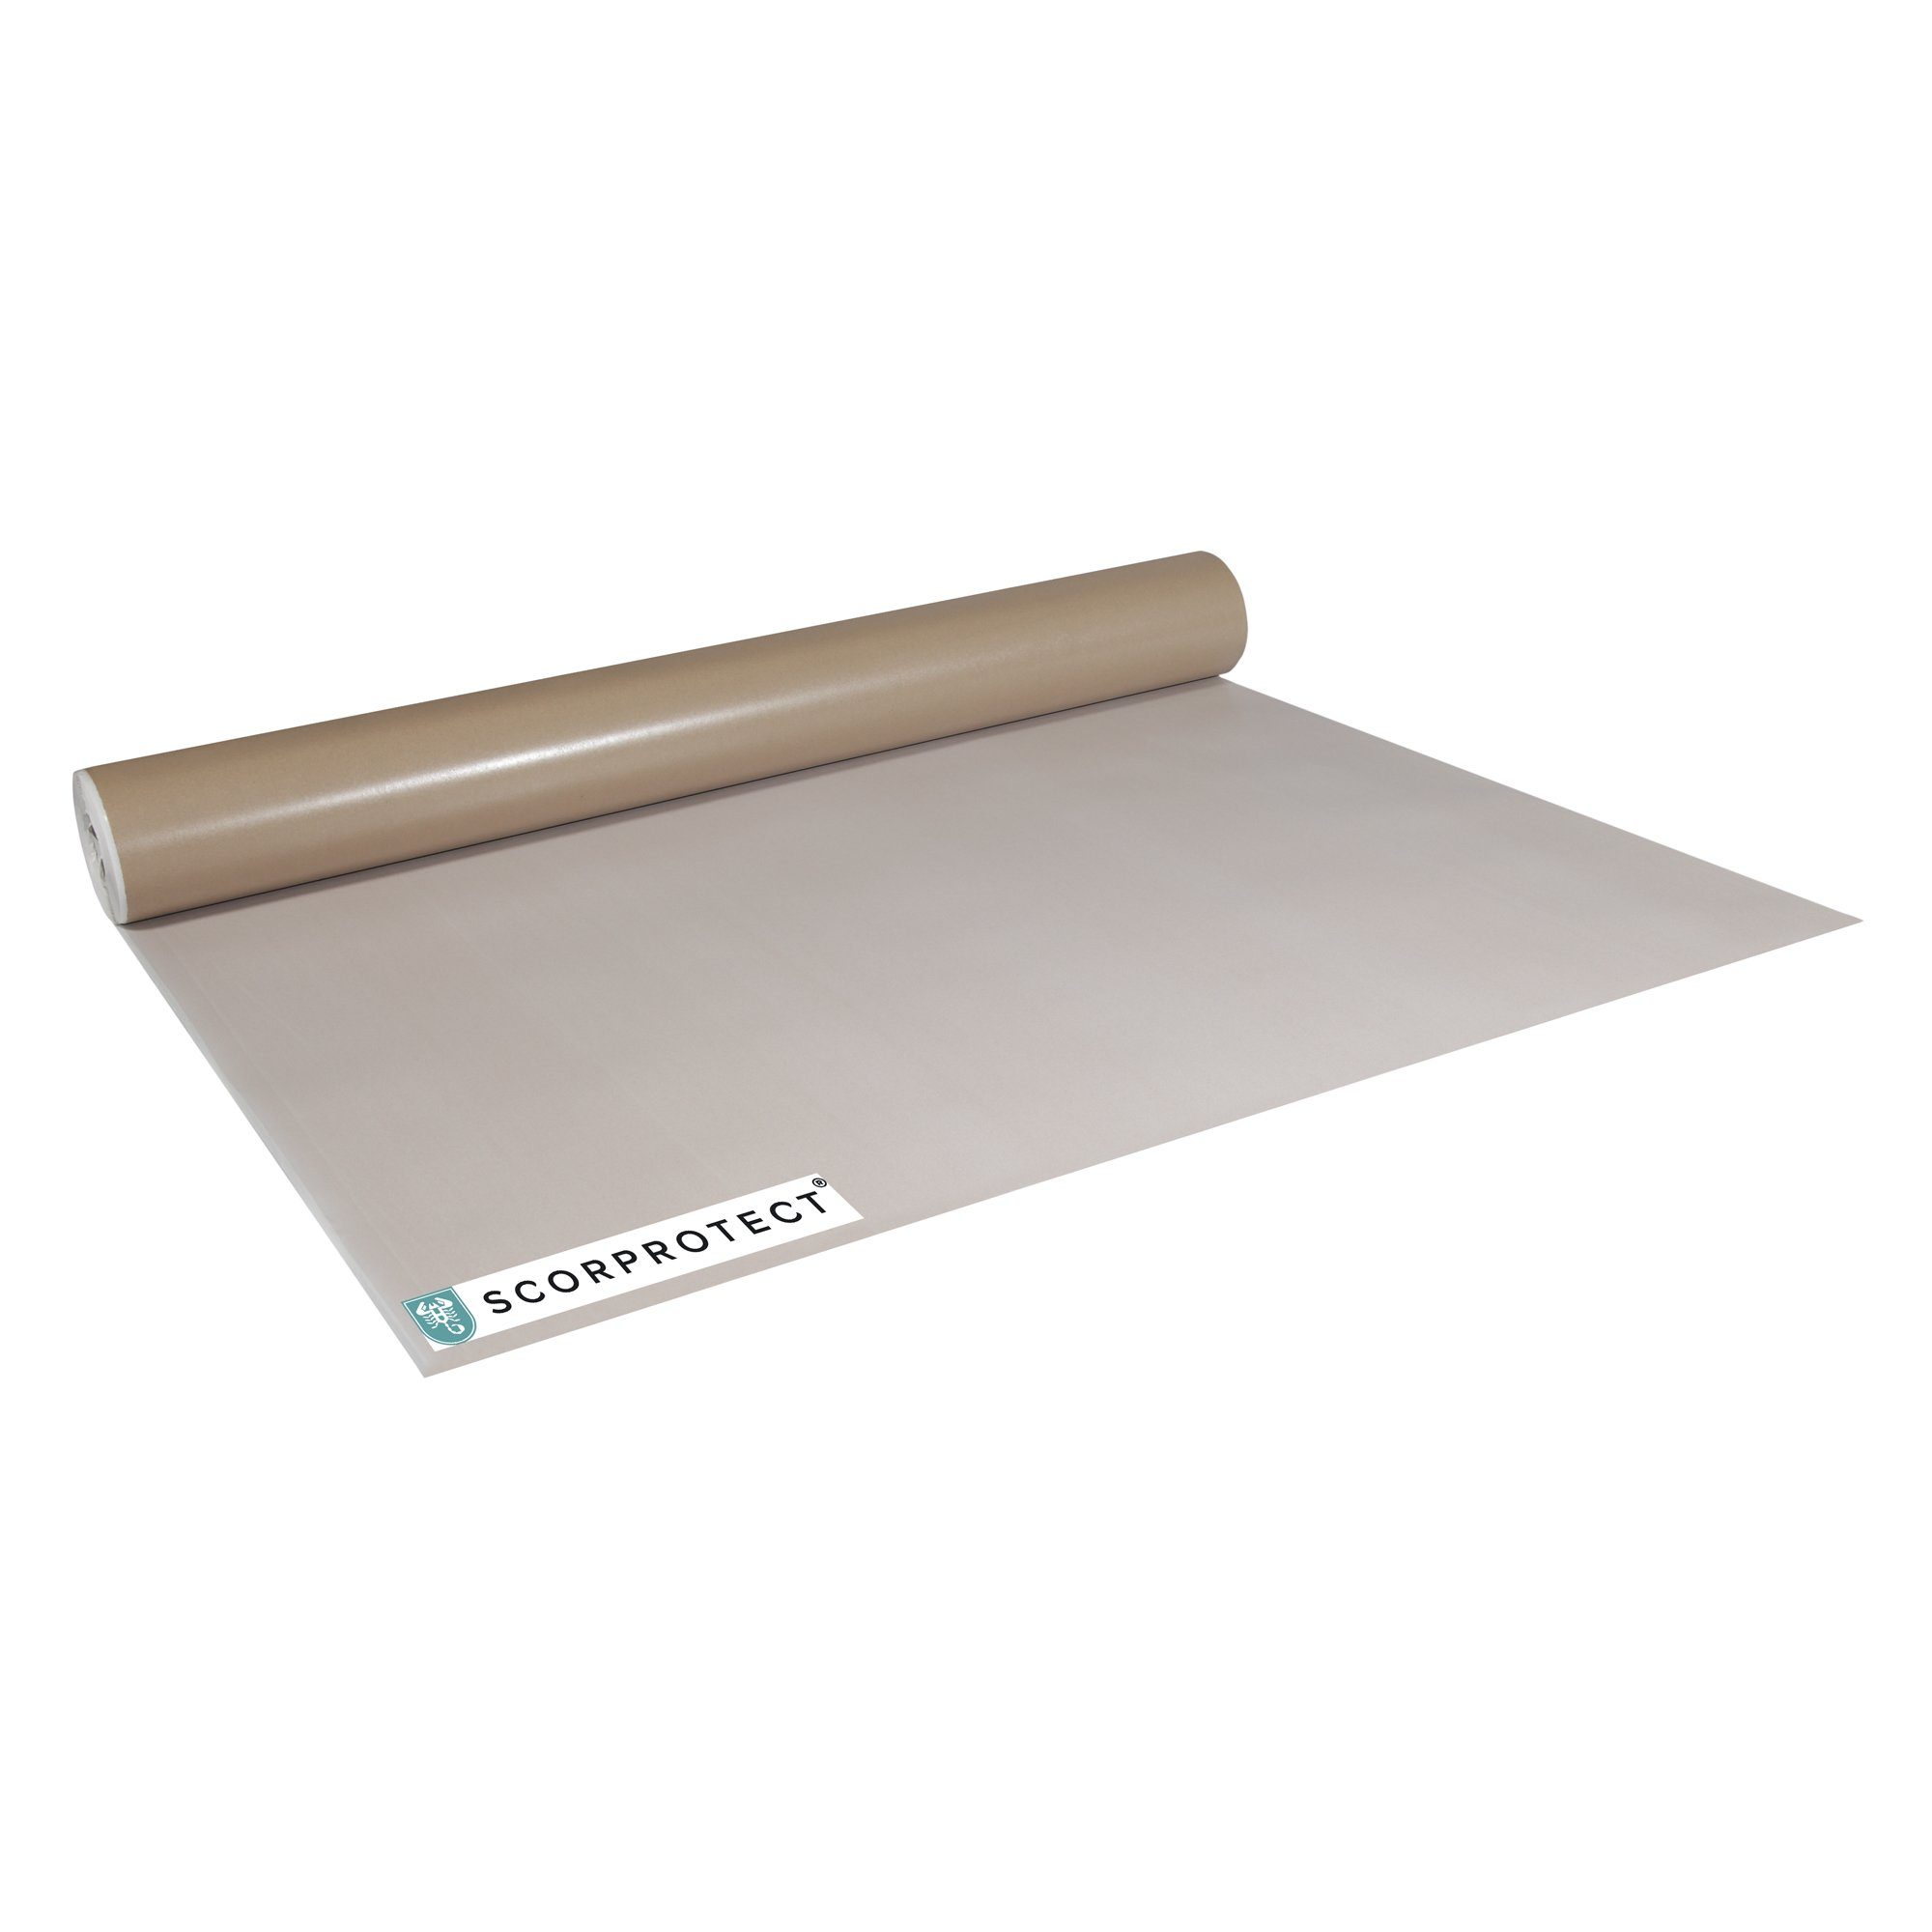 Scorprotect® Abdeckfolie Abdeckpappe Milchtütenpapier ca. 1,25m beschichtet 200-220 g/m²